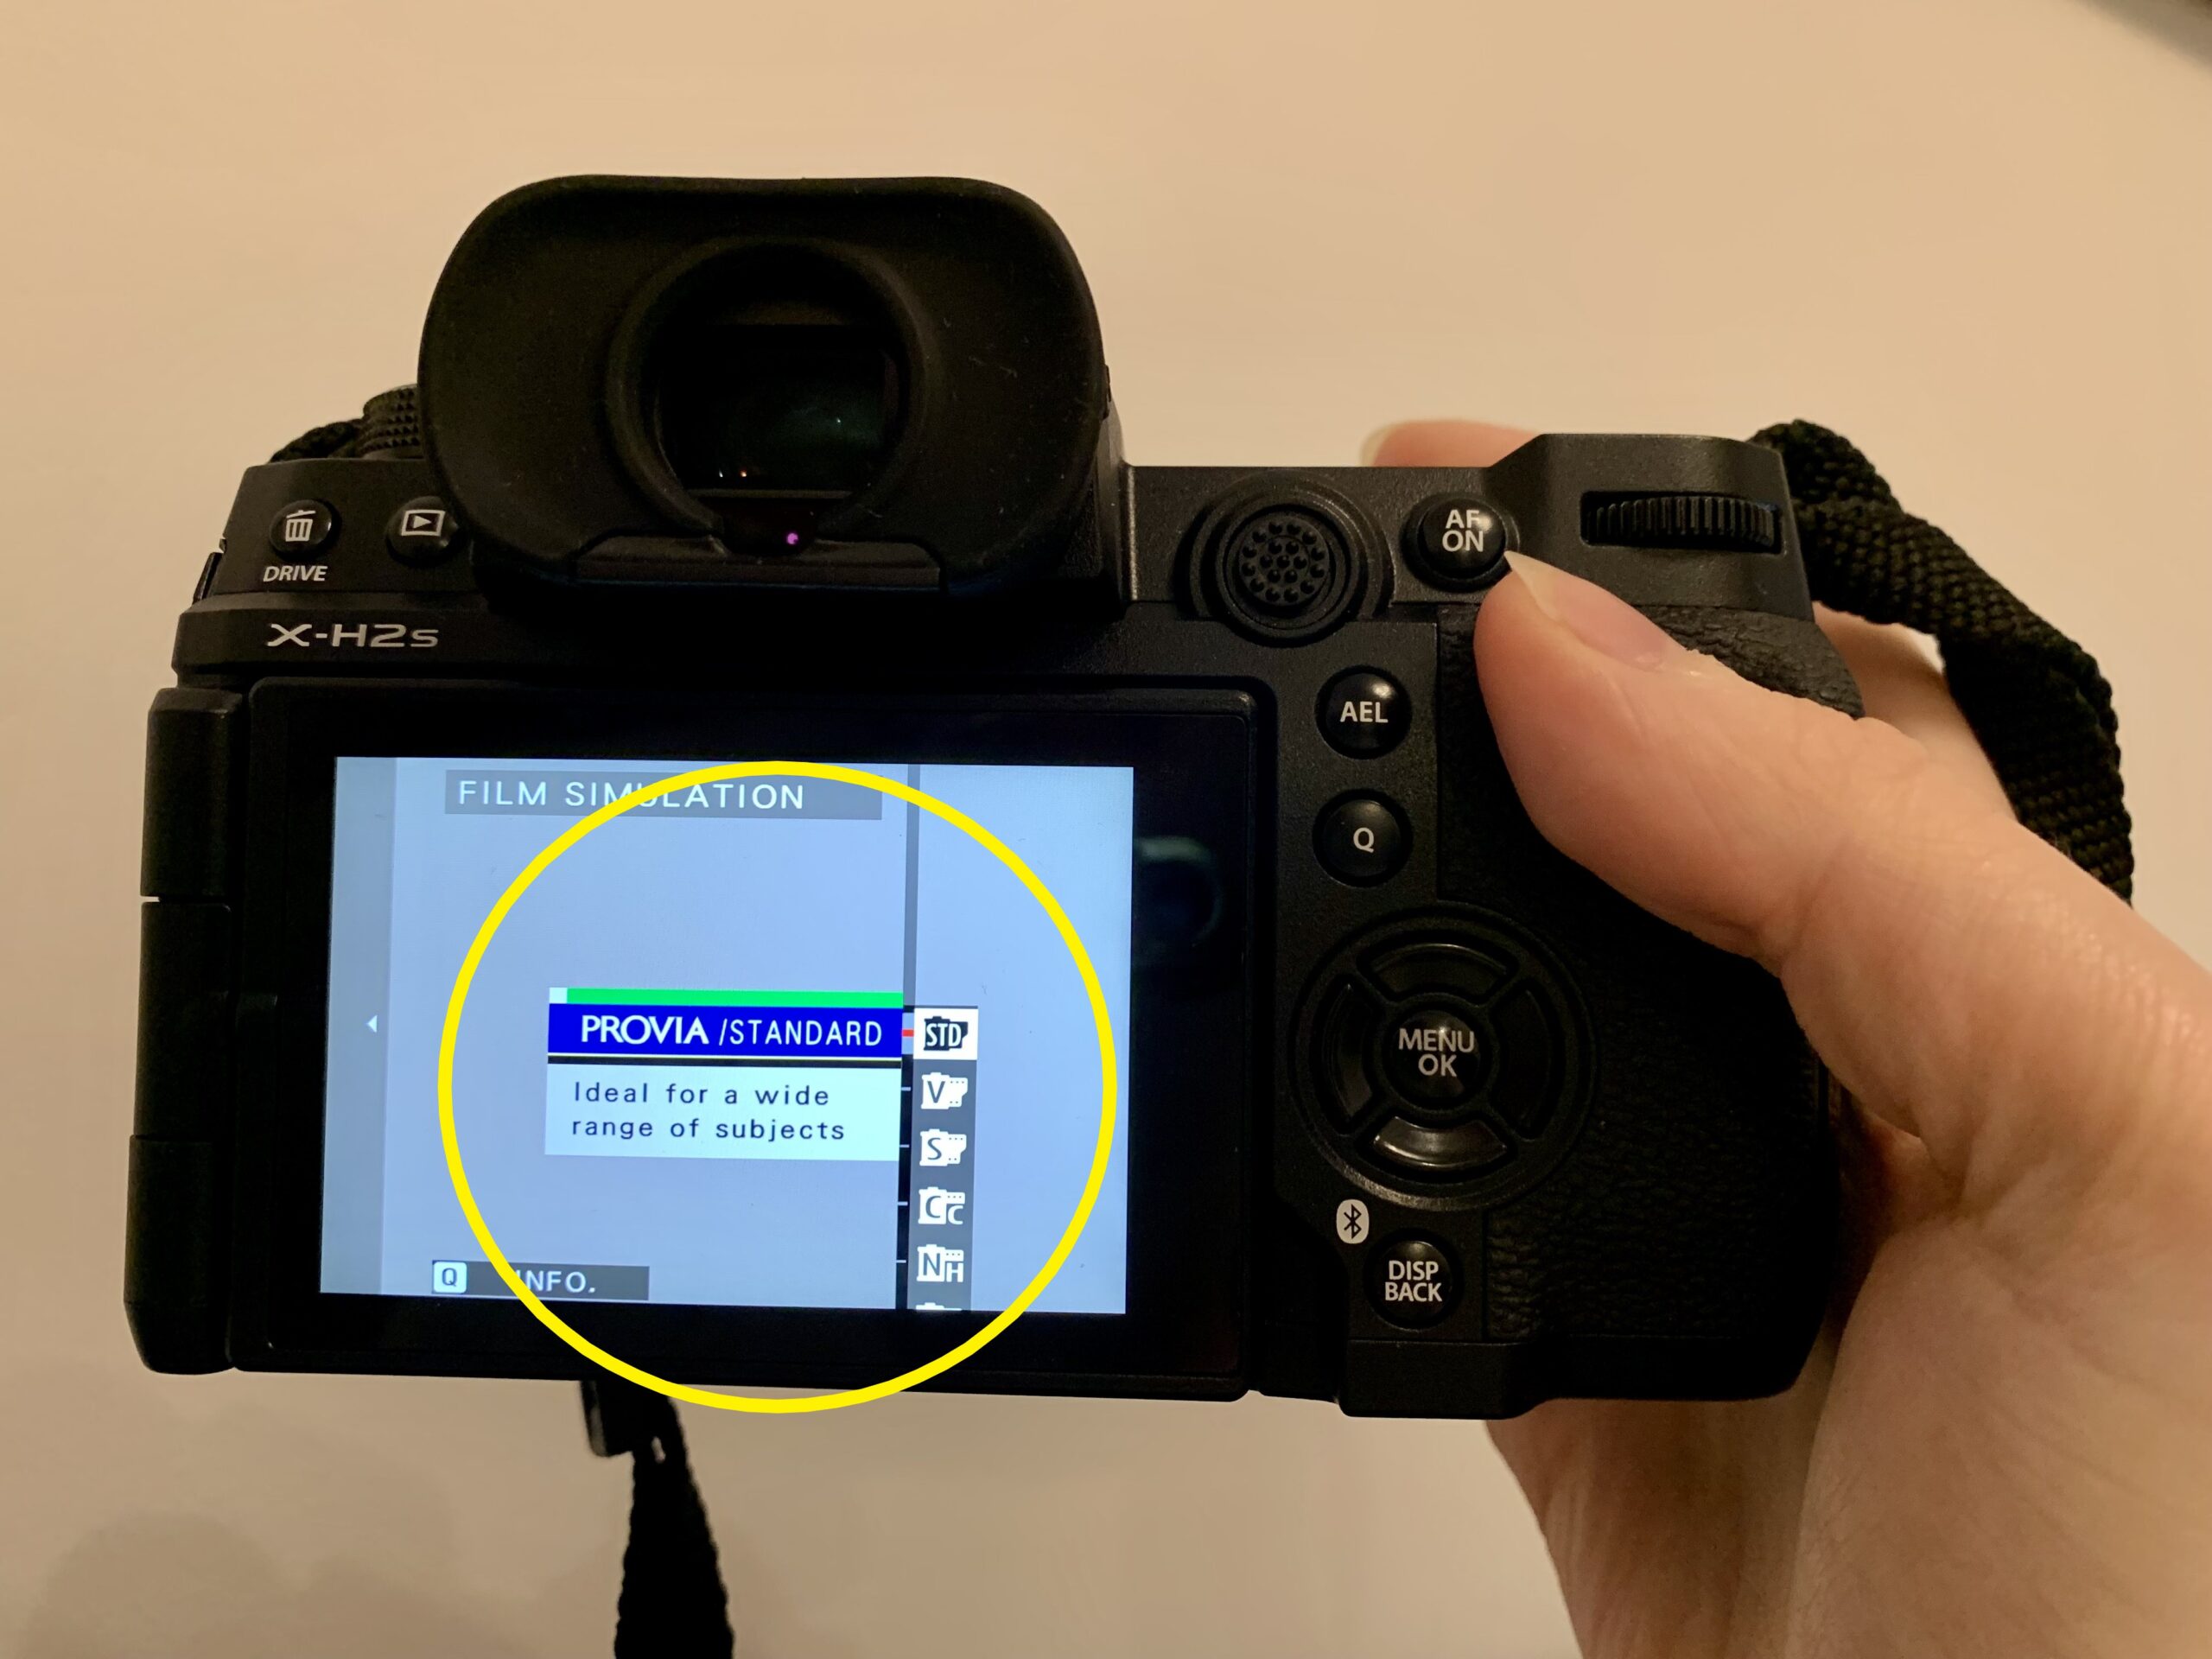 So ändern Sie die Filmsimulation auf einer Fujifilm-Kamera